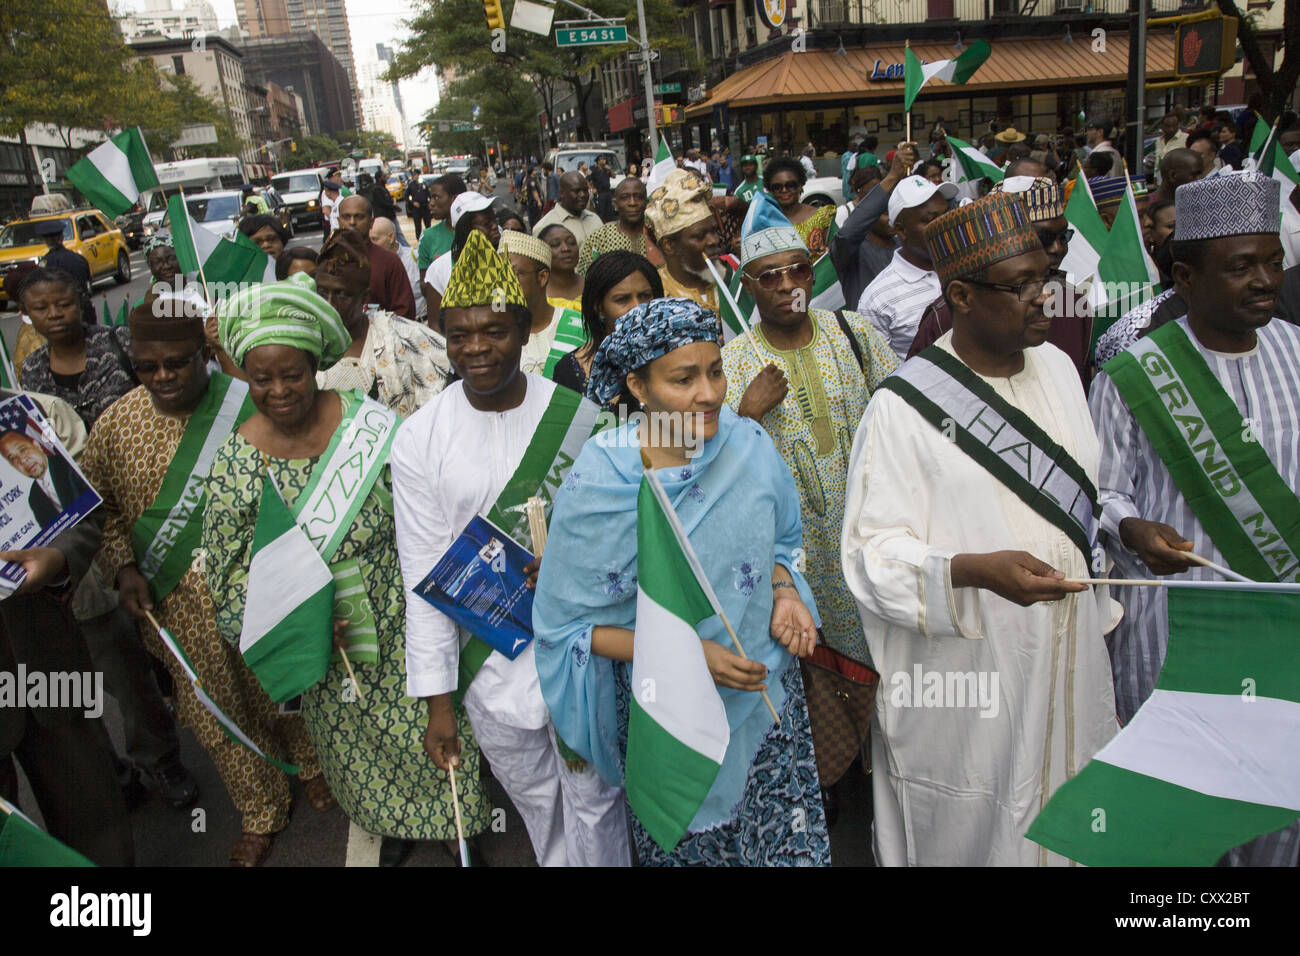 Nigerianer aus nahe New York stellte sich heraus, dass es sich für die Nigerian Independence Day Parade entlang der 2nd Avenue in New York City. Stockfoto